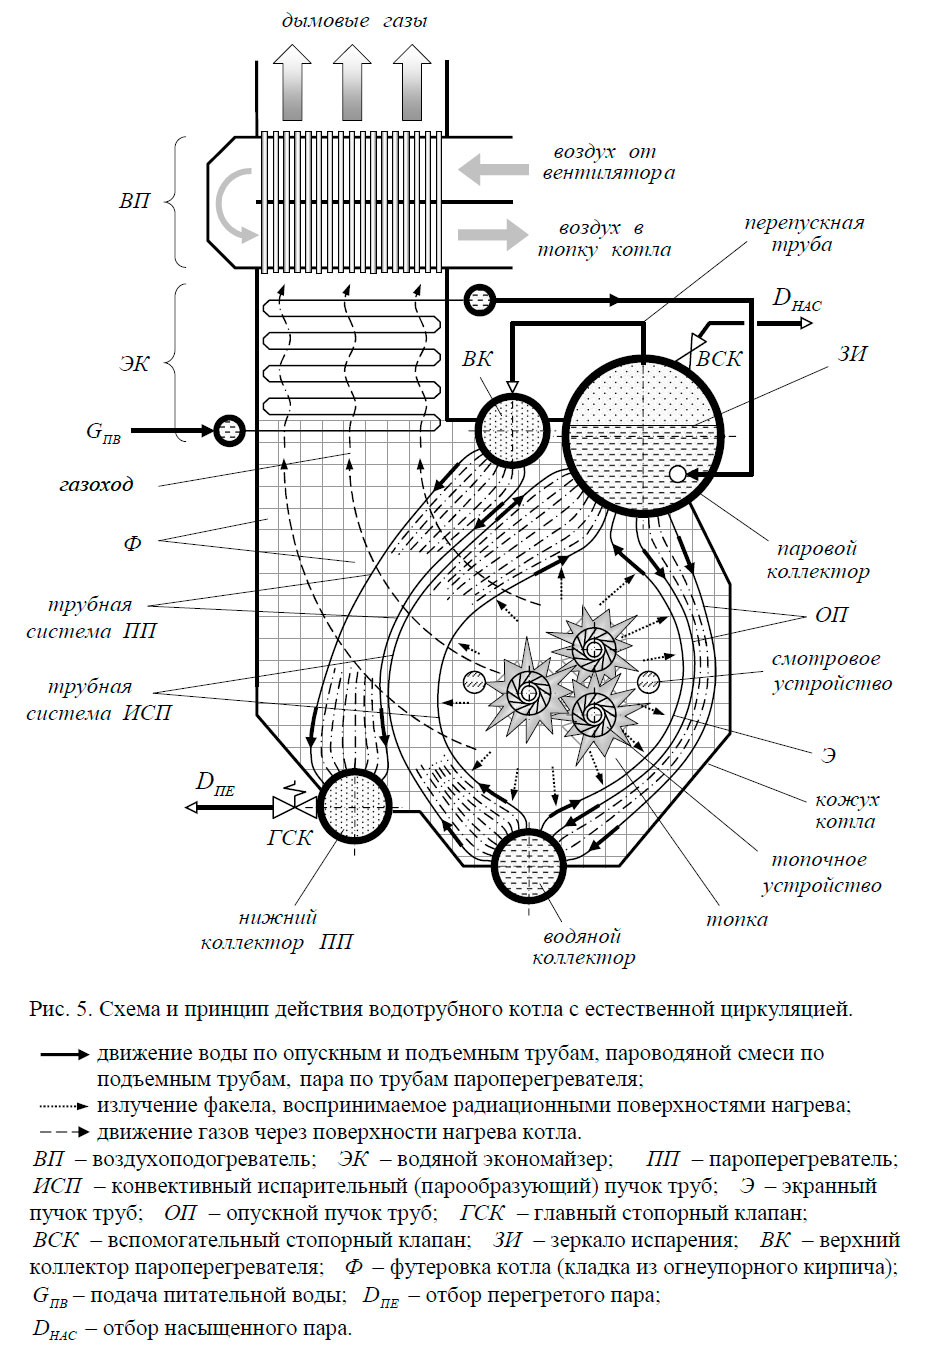 Схема и принцип действия водотрубного котла с естественной циркуляцией